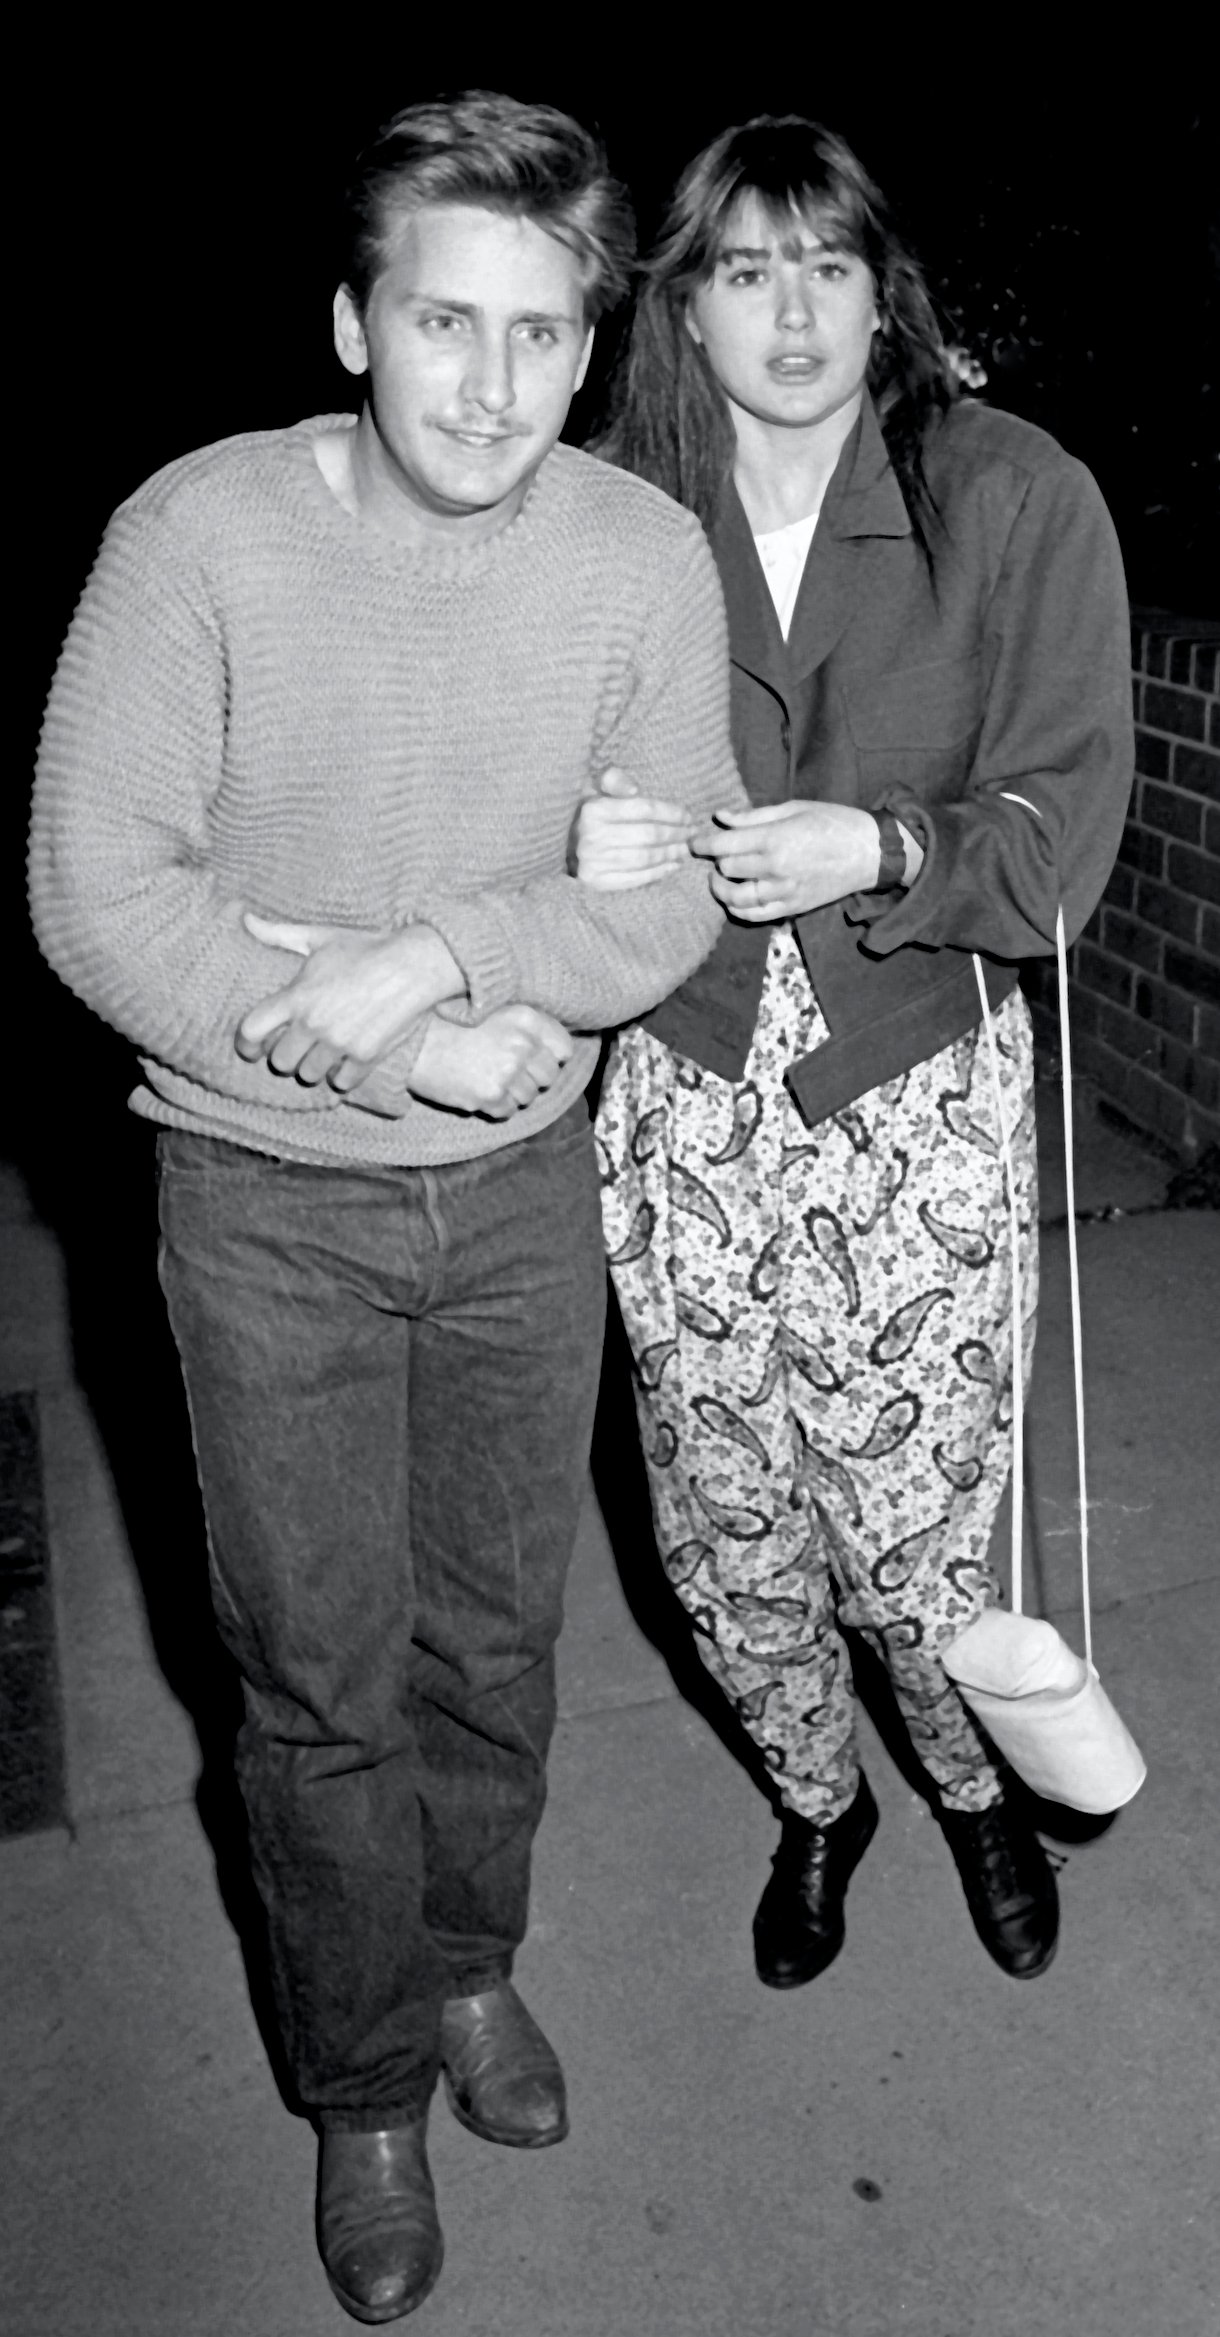 Emilio Estevez and Demi Moore in 1985